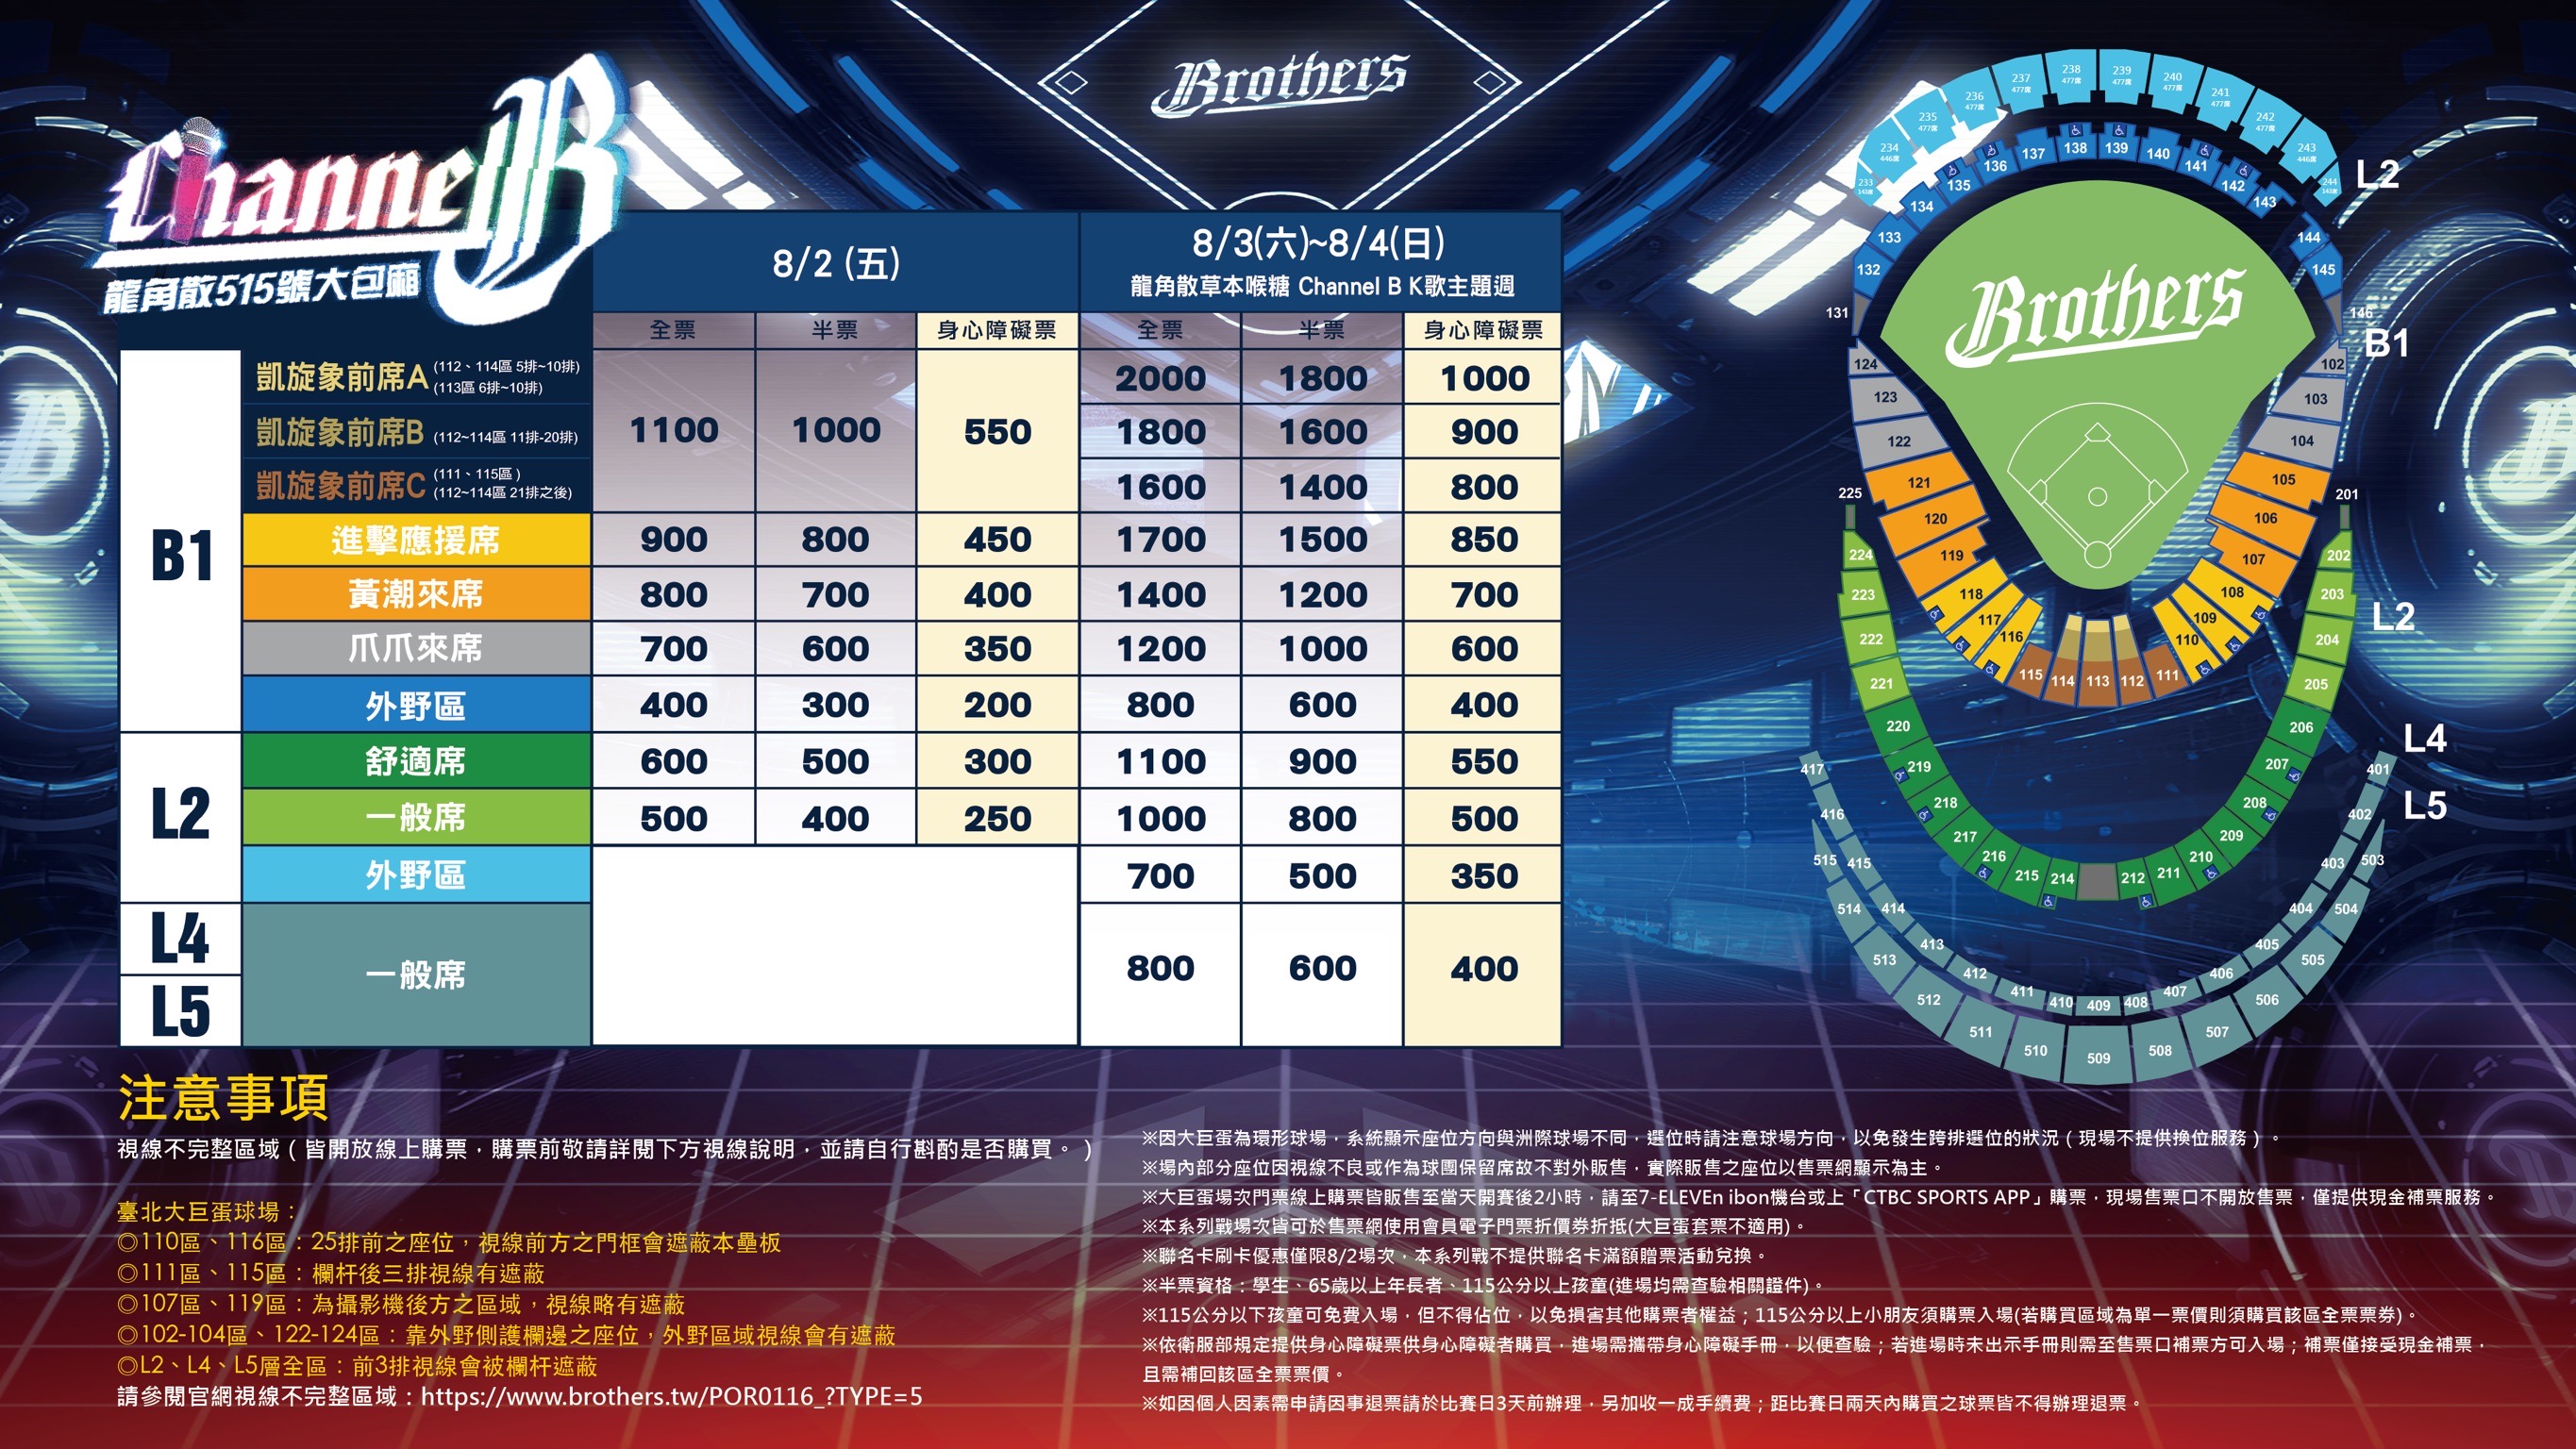 中信兄弟队将于8月3、4日于台北大巨蛋主场举办「CHANNEL B」K歌主题周，预计在4日中午12点半陆续开放售票。图／中信兄弟队提供